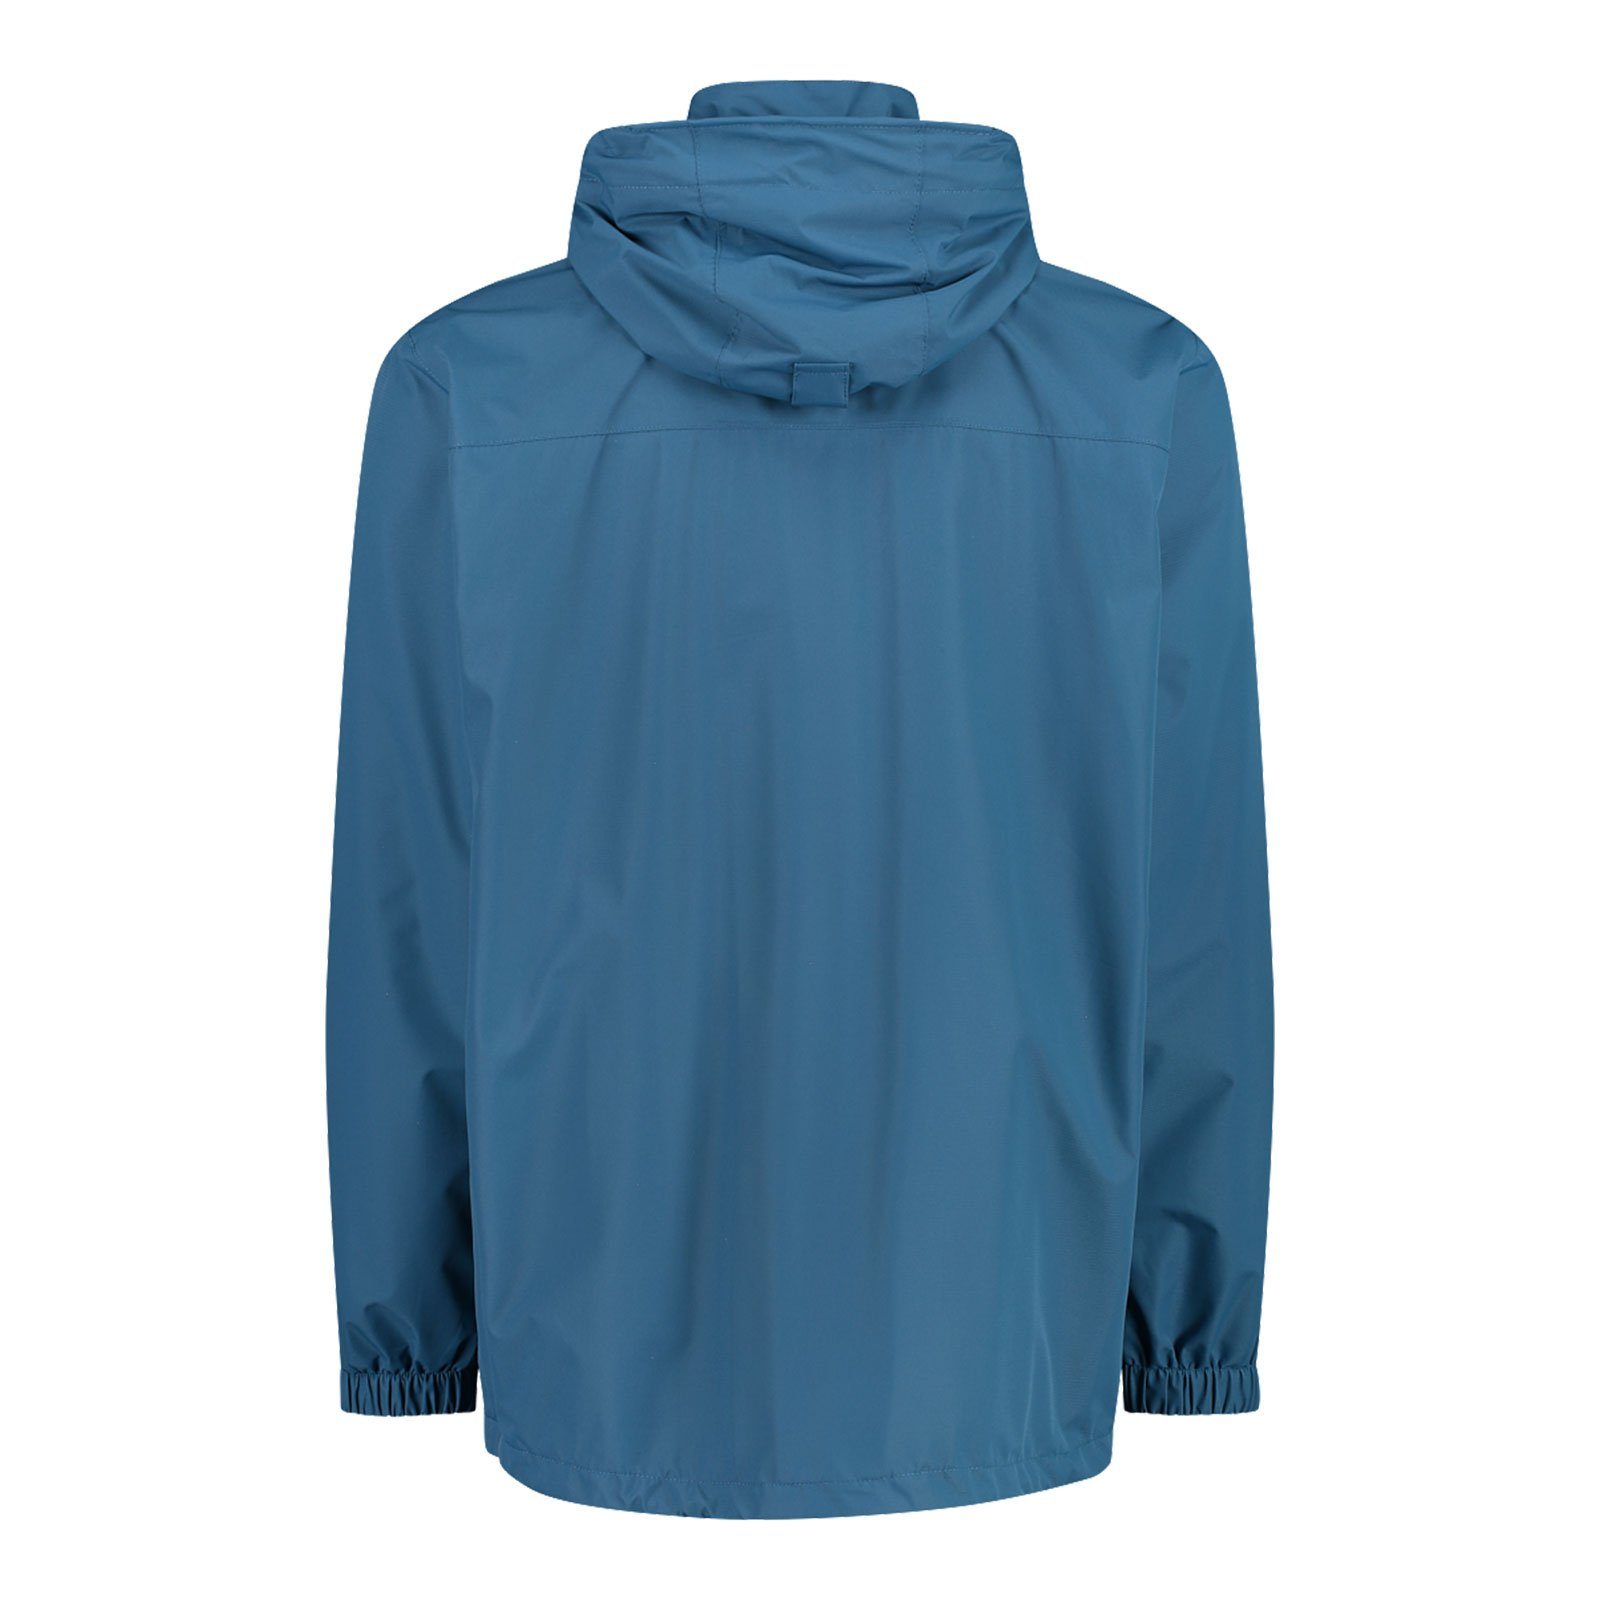 Jacket der M879 Zip Hood Man blue Jacke Regenjacke Packtasche dusty CMP Verstauen integrierter zum mit